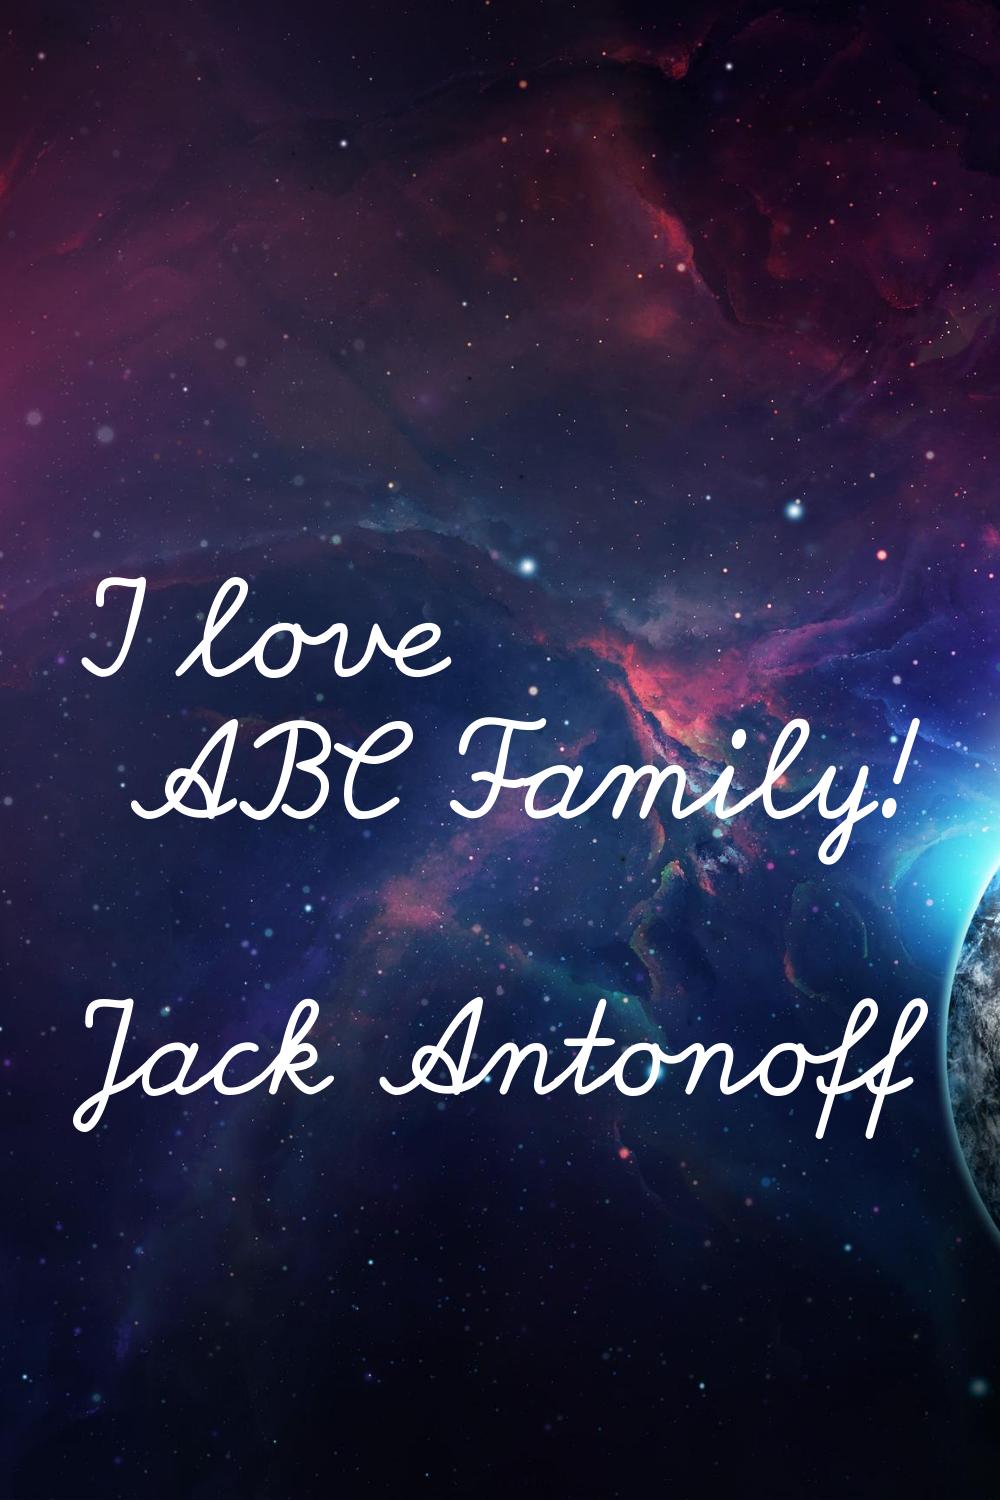 I love ABC Family!